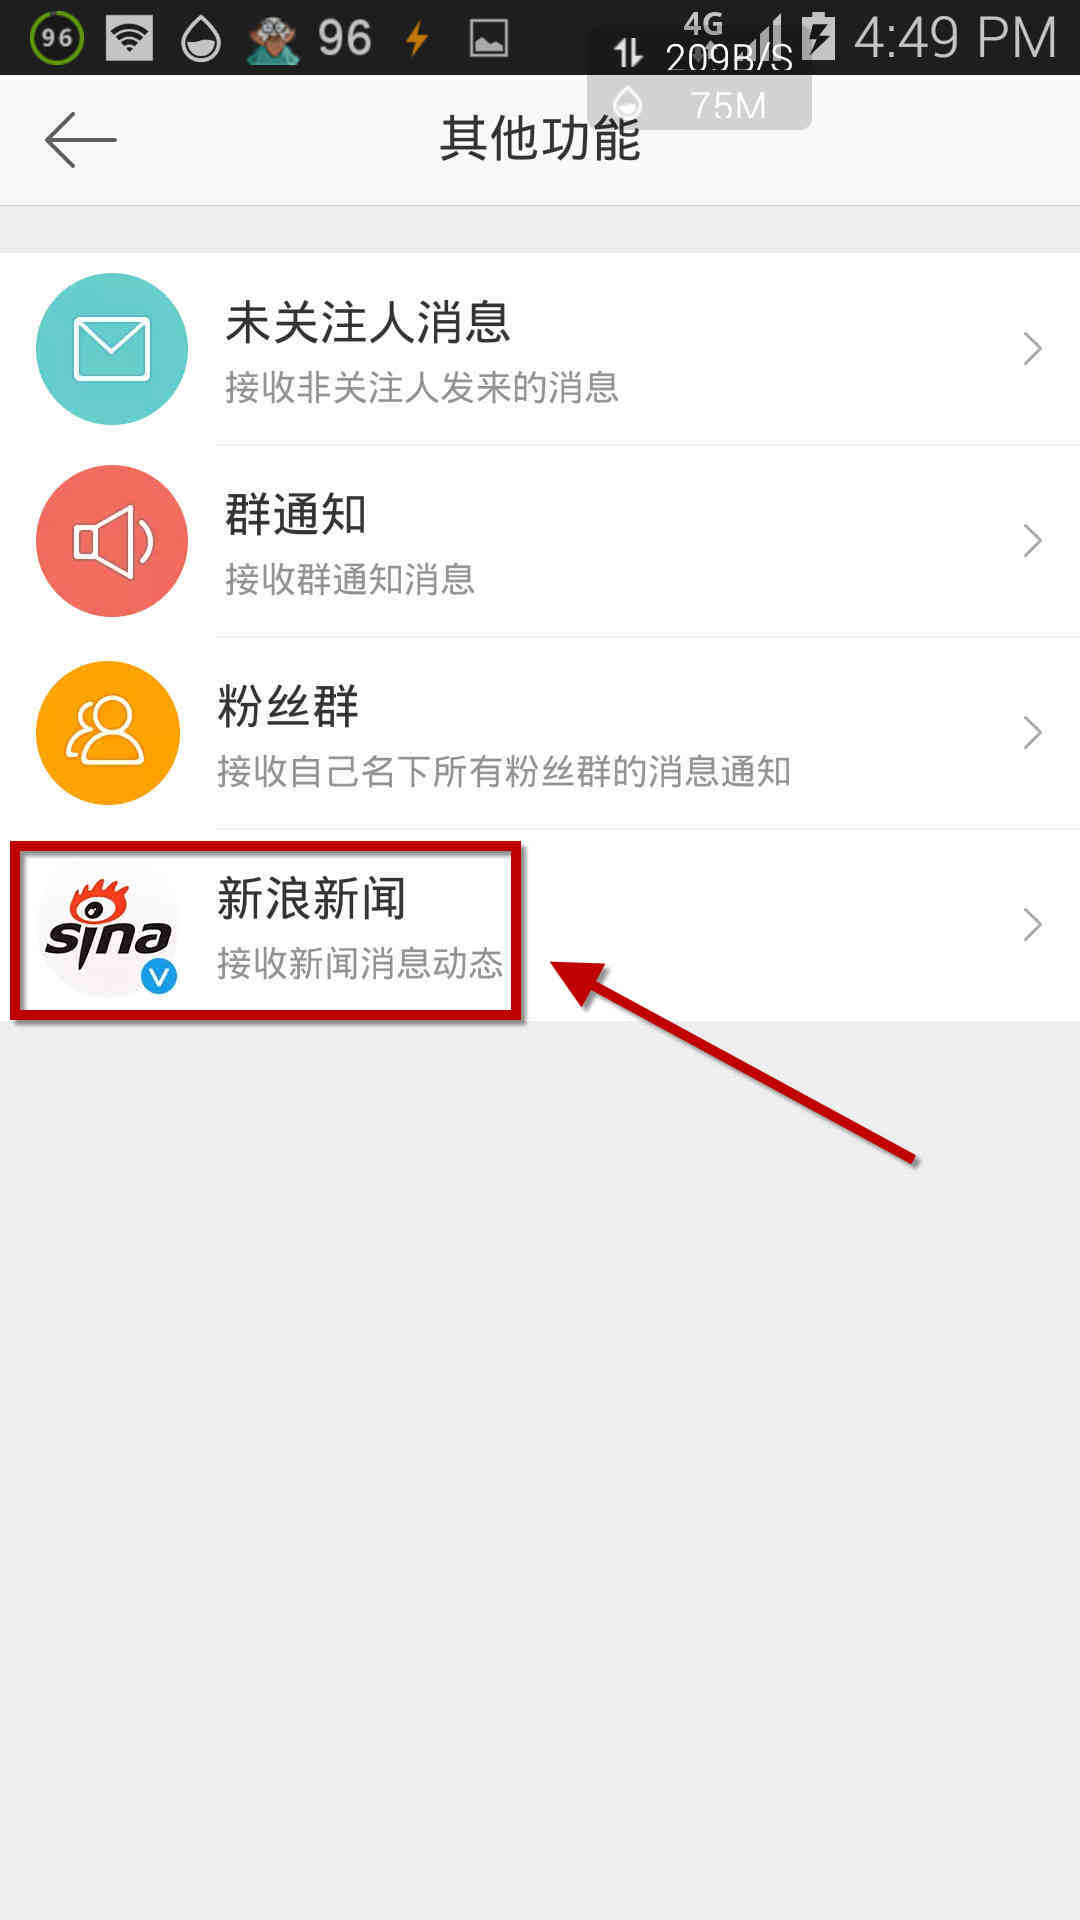 Kitiho ny "Sina News" ao amin'ny Weibo Picture 5